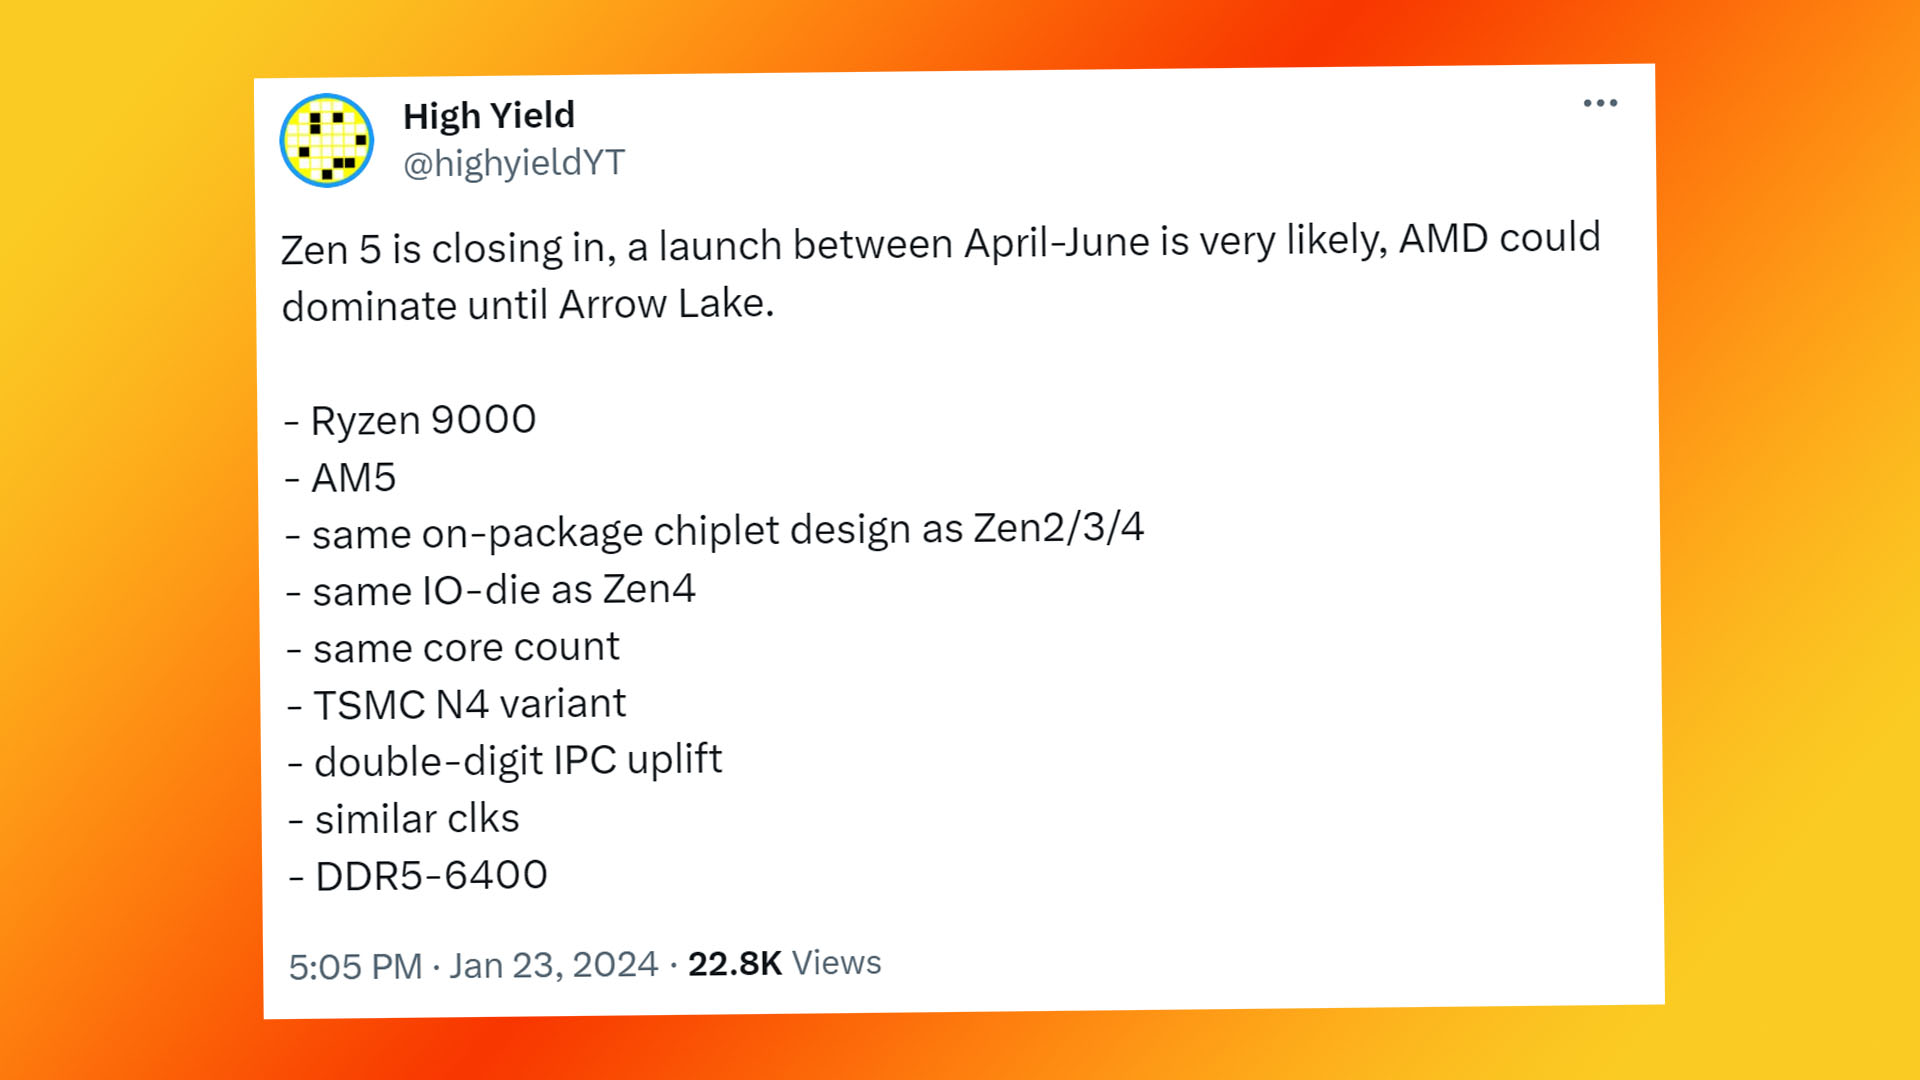 AMD Ryzen 9000 release date: High Yield tweet